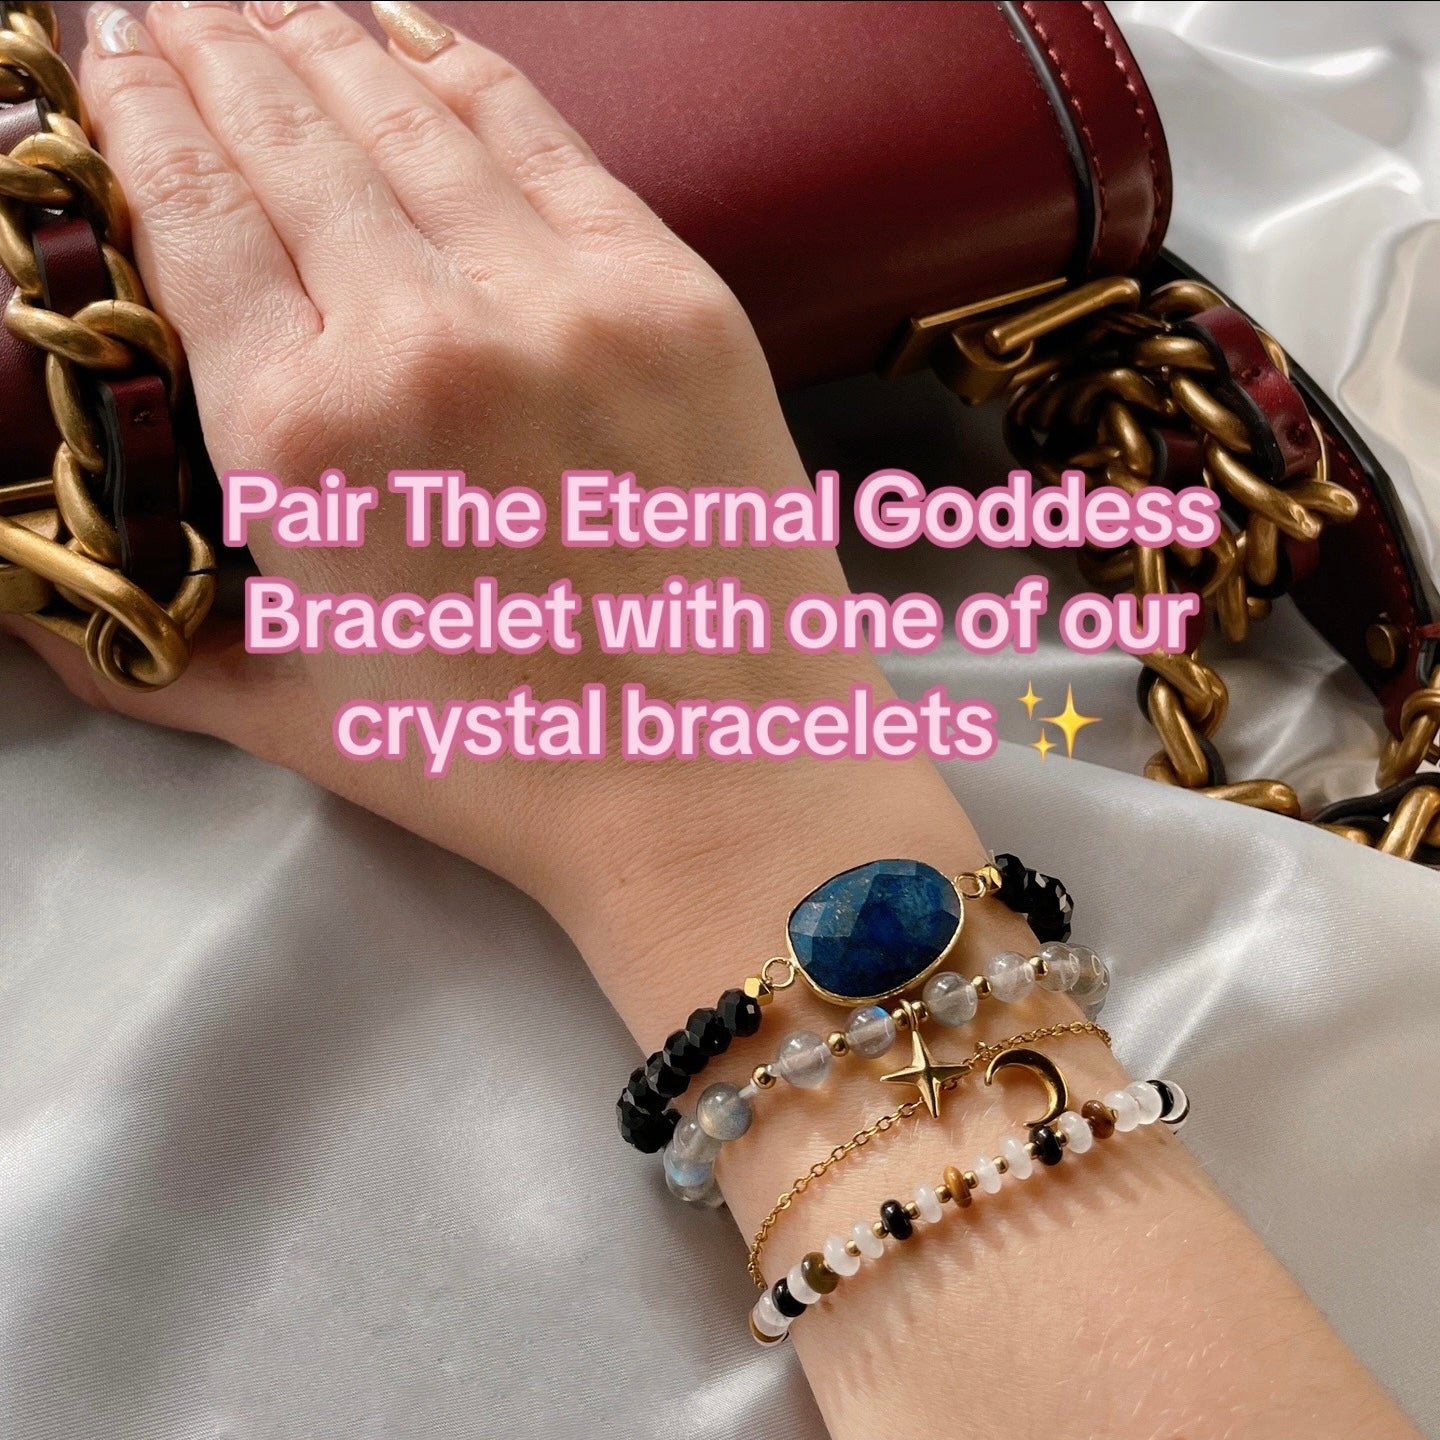 The Eternal Goddess Bracelet